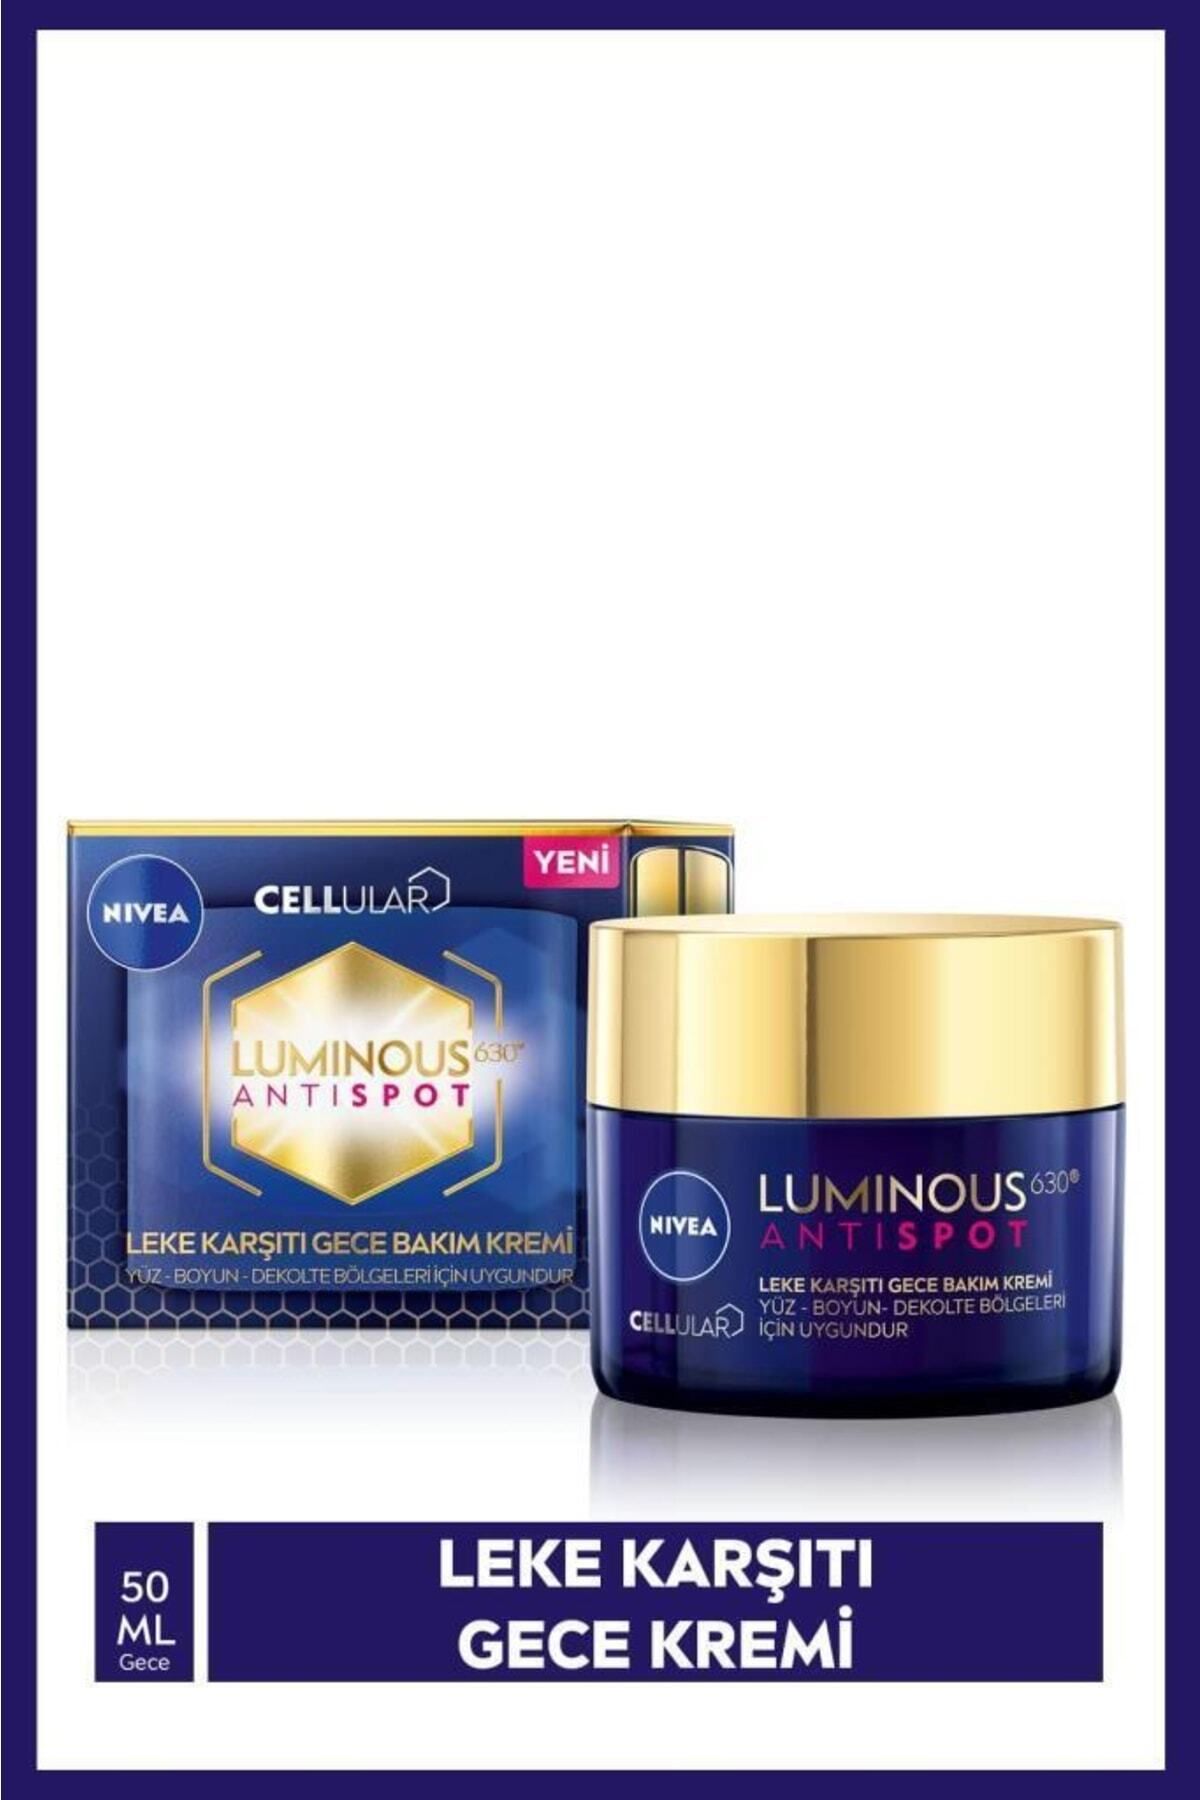 NIVEA کرم روز ضد لک Luminous630 با SPF50 و 40 میلی لیتر، کرم شب و تنظیم کننده رنگ پوست